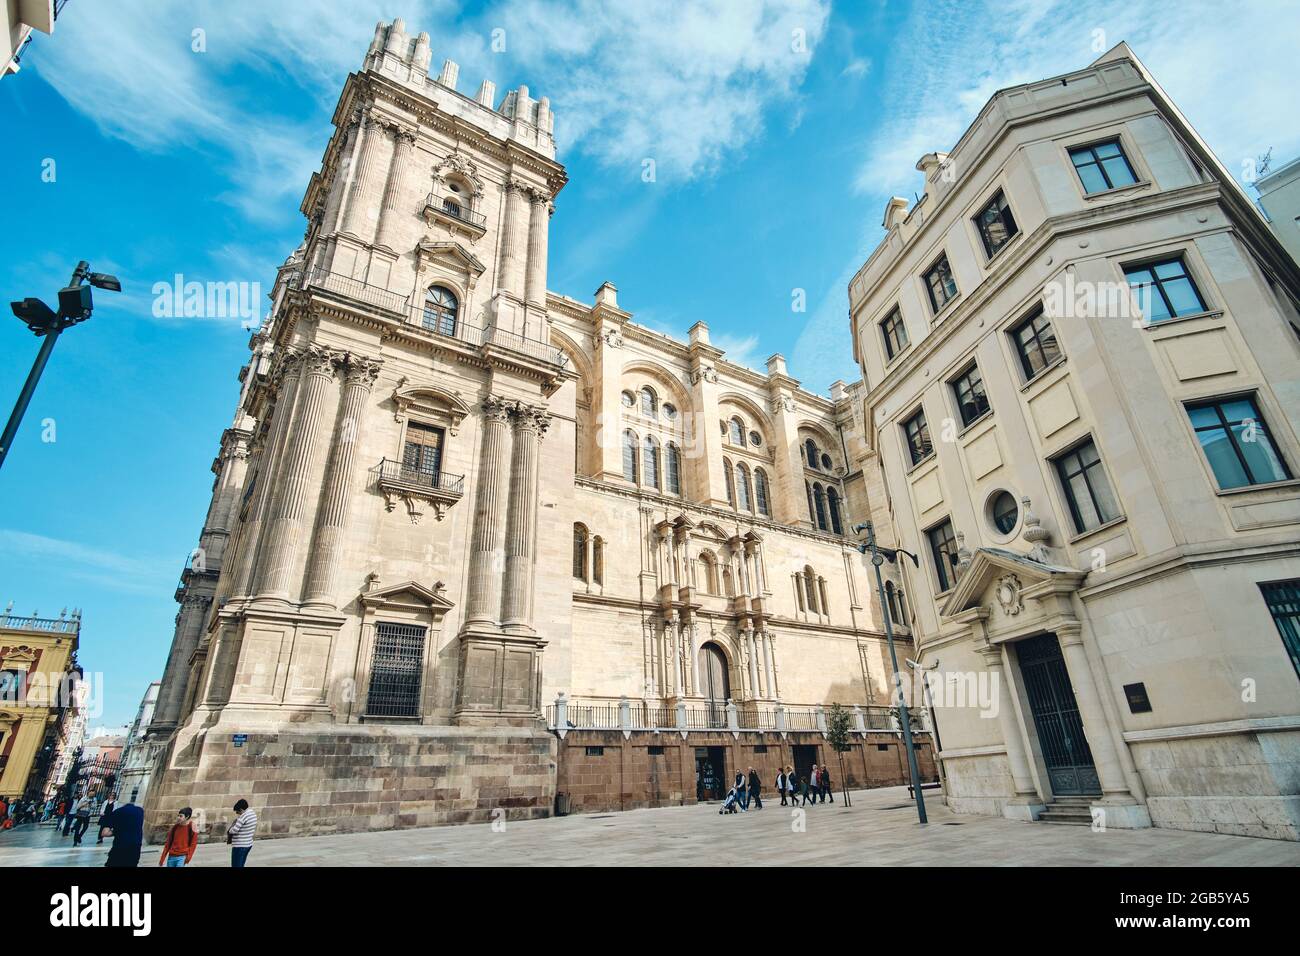 La Cattedrale di Malaga, in Spagna, è stata completata nel 1782. È una delle più grandi cattedrali del paese ed è situata nel centro della città. Si Foto Stock